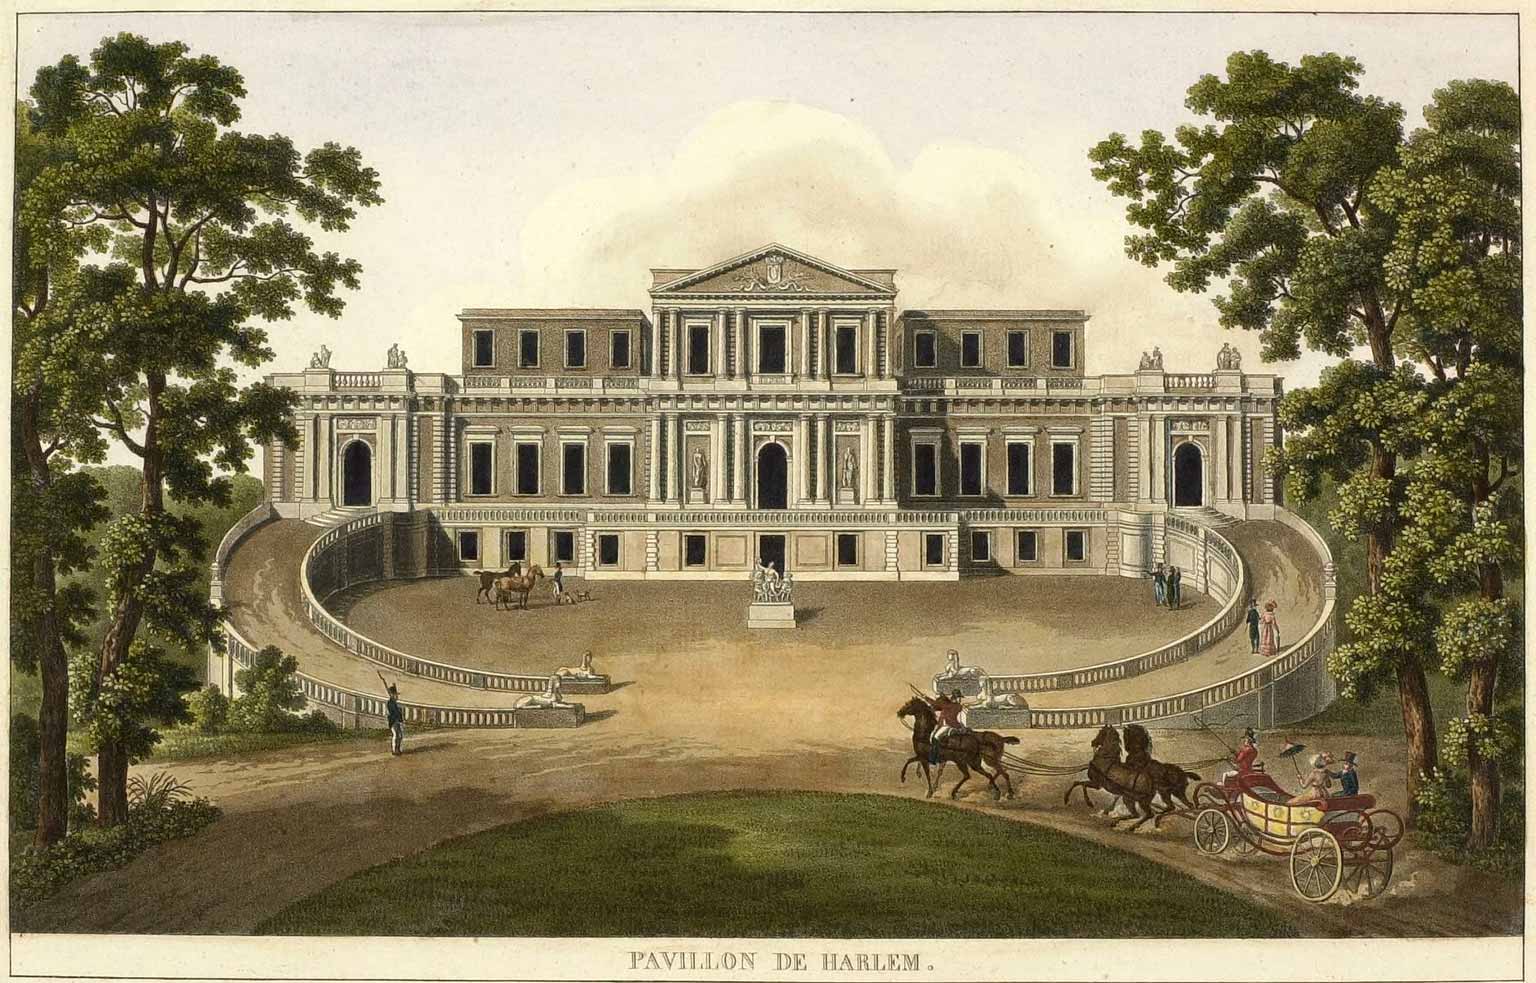 Pavilion Welgelegen, Haarlem, around 1810